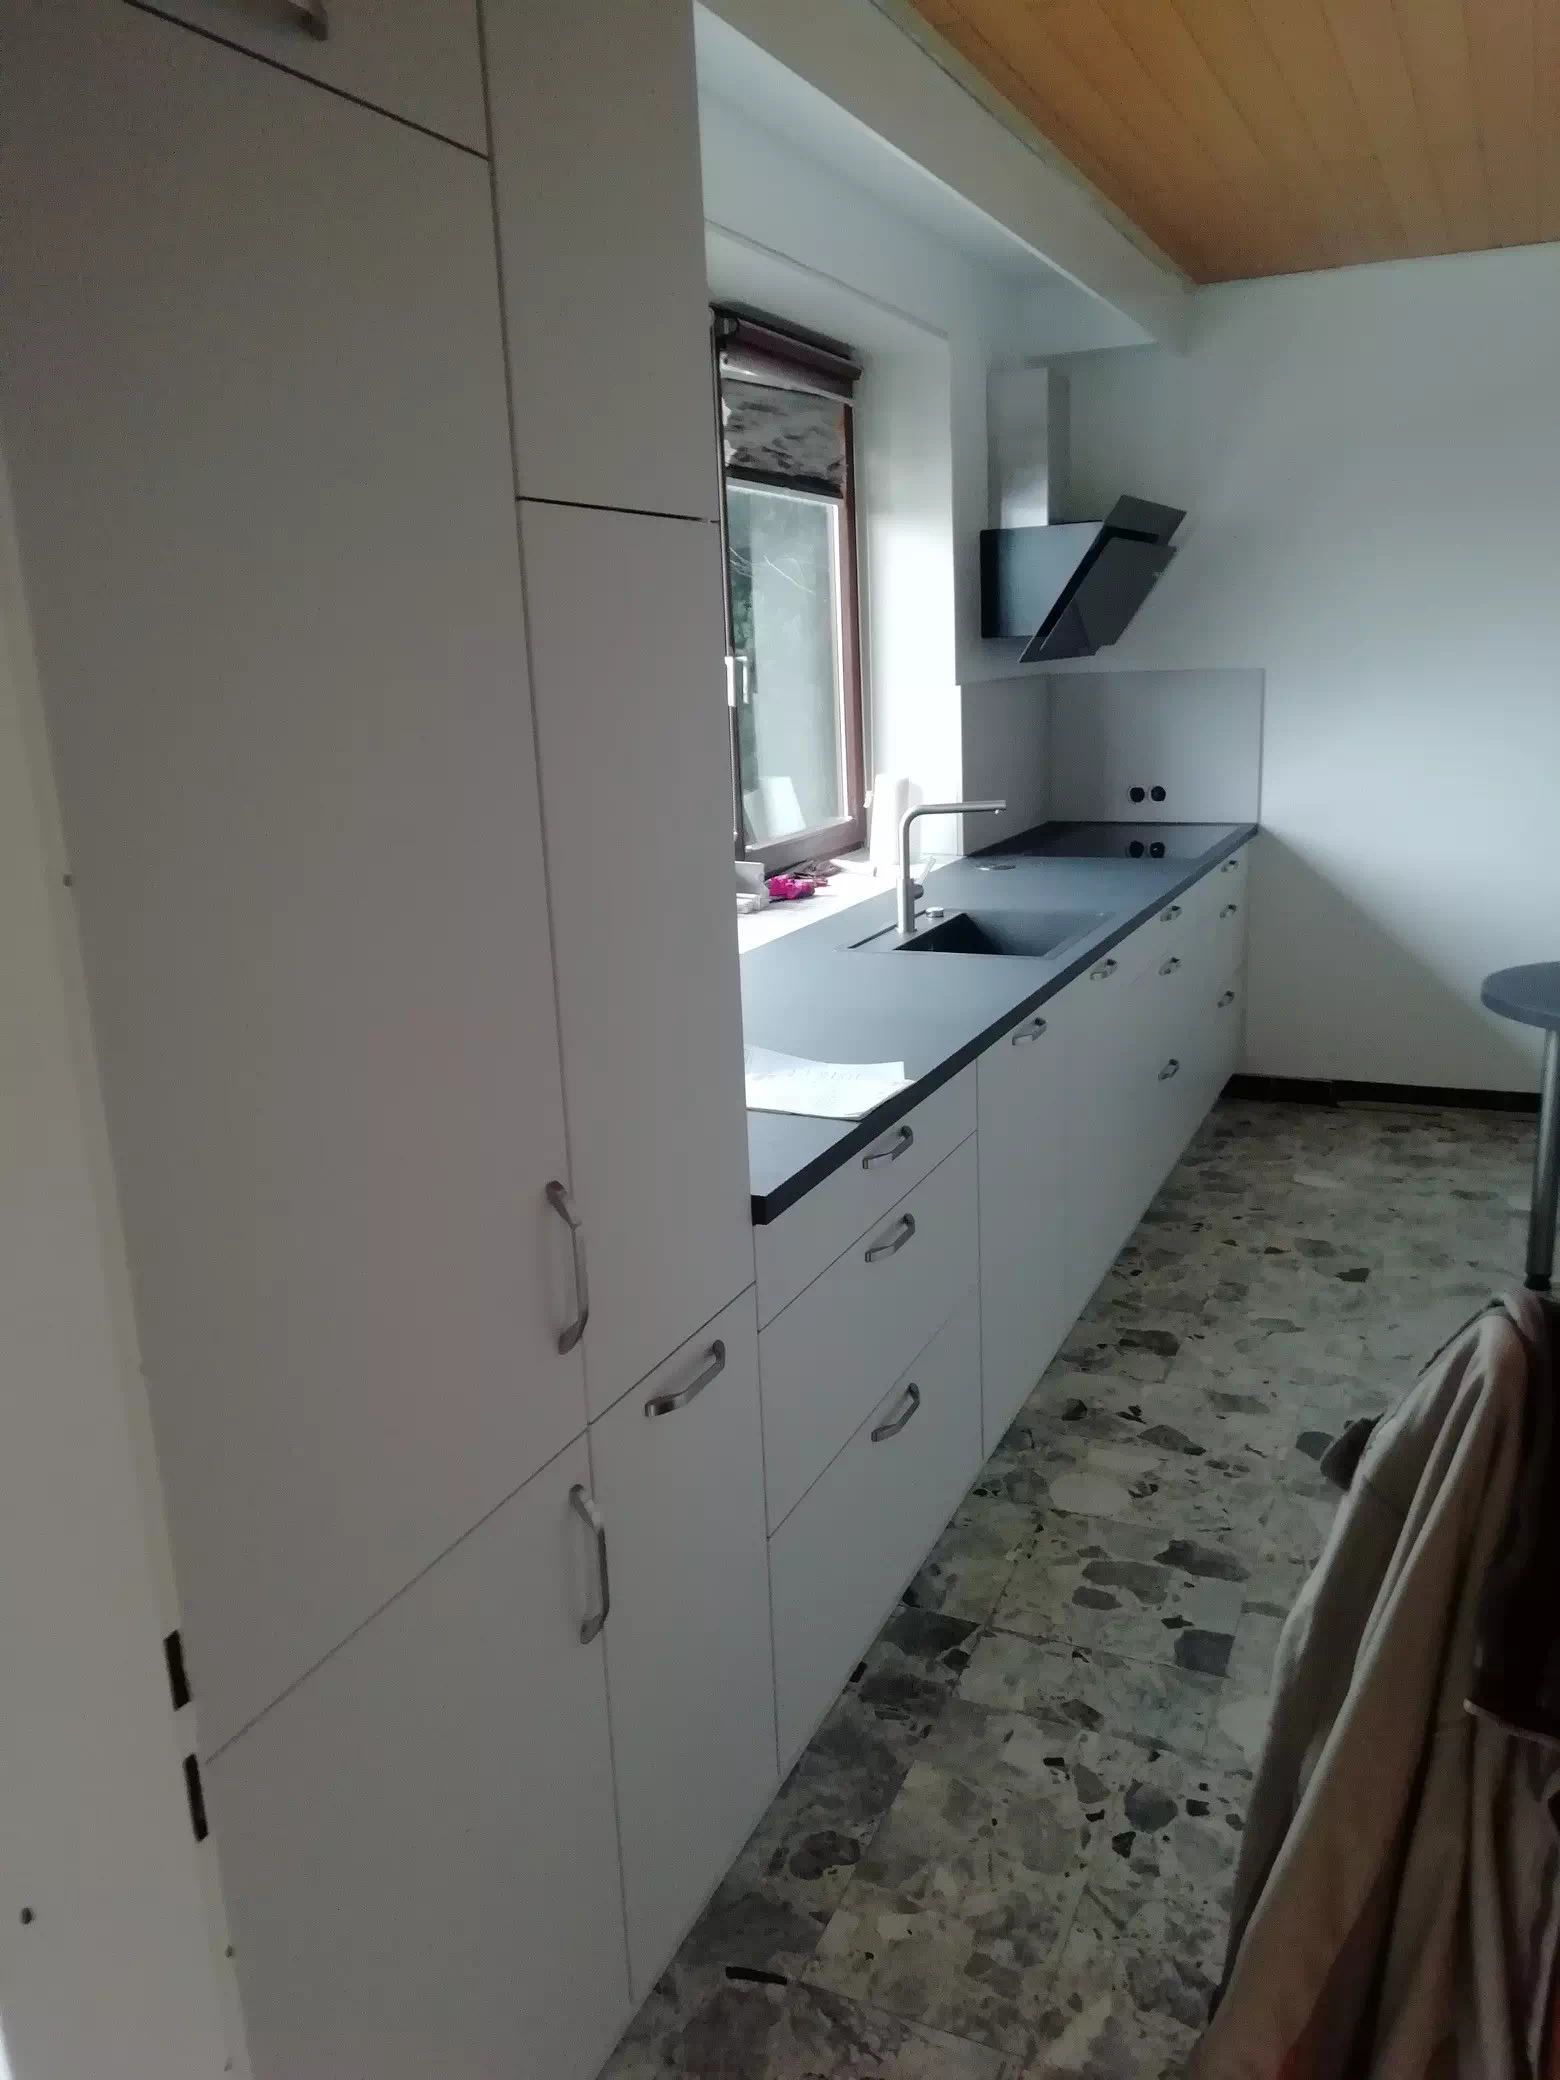 Moderne, weiße Küche mit schwarzer Arbeitsplatte, Seitenansicht